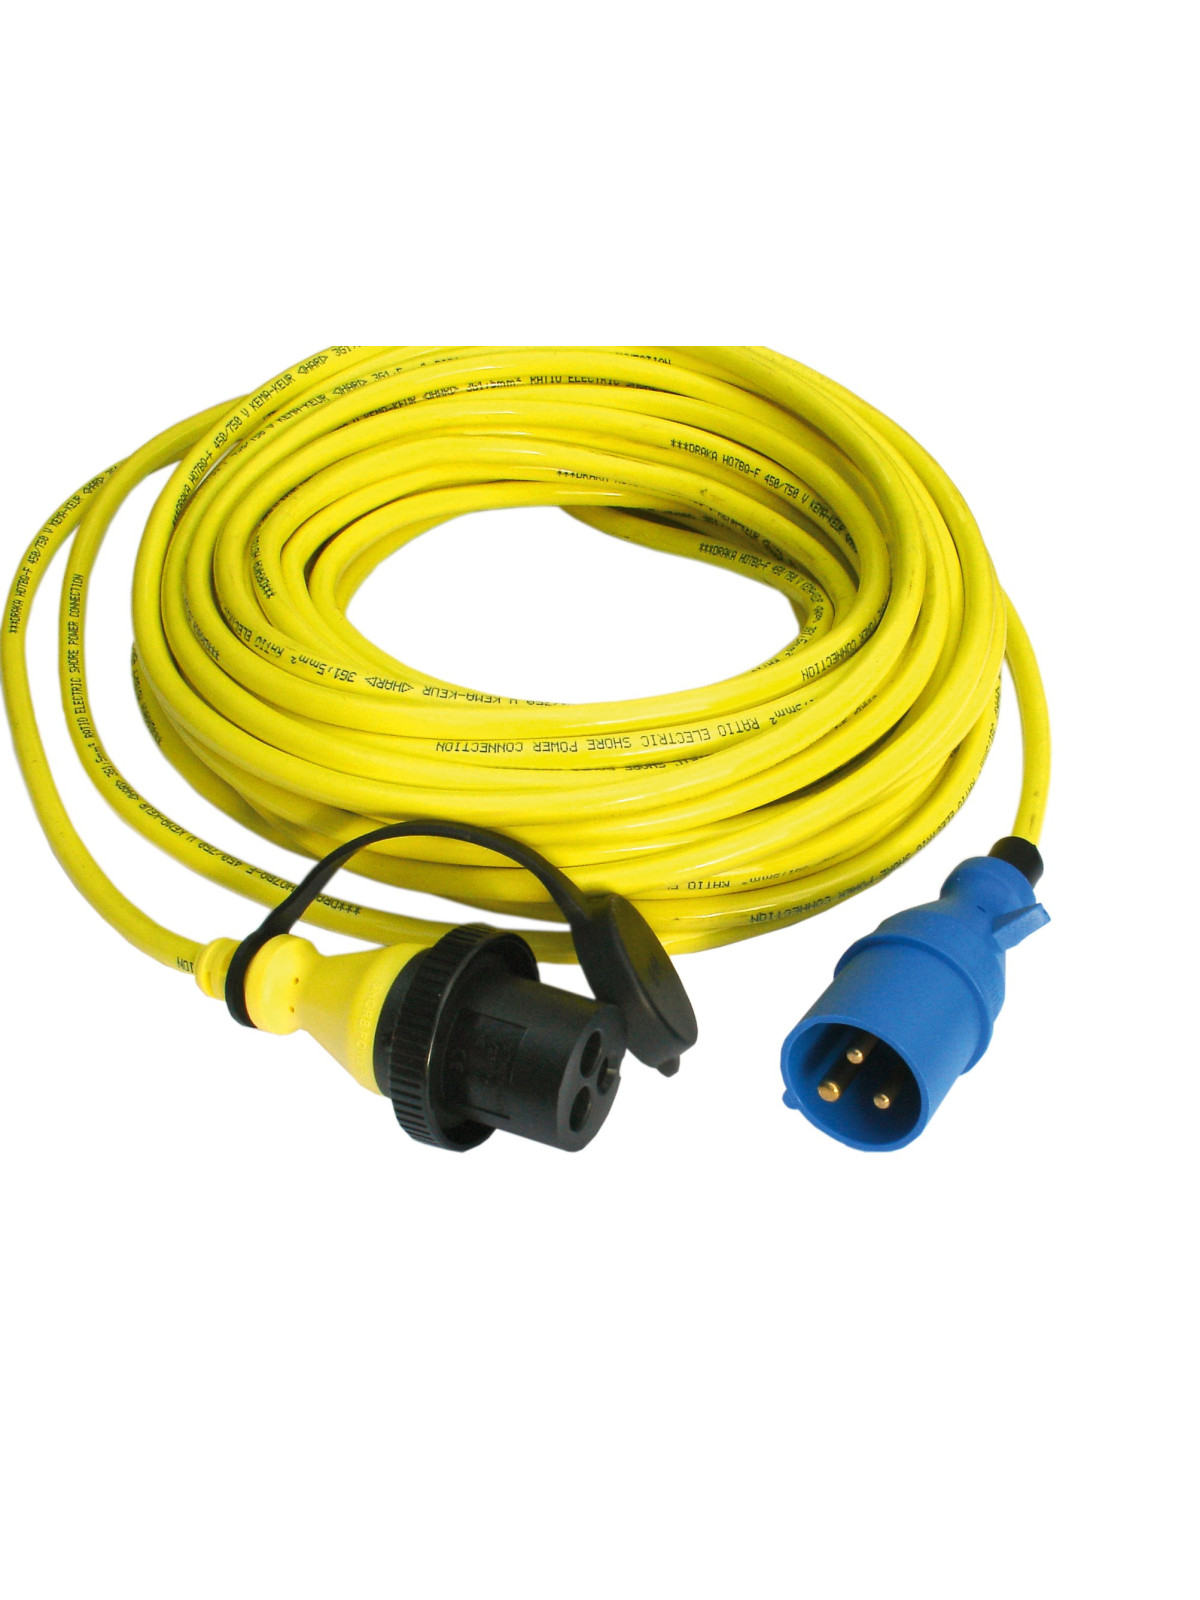 Cable alargador extensible 5m 16a/250v. Alargador 5m para 16a/250v.  Alargadera de 5m como max 3680w.